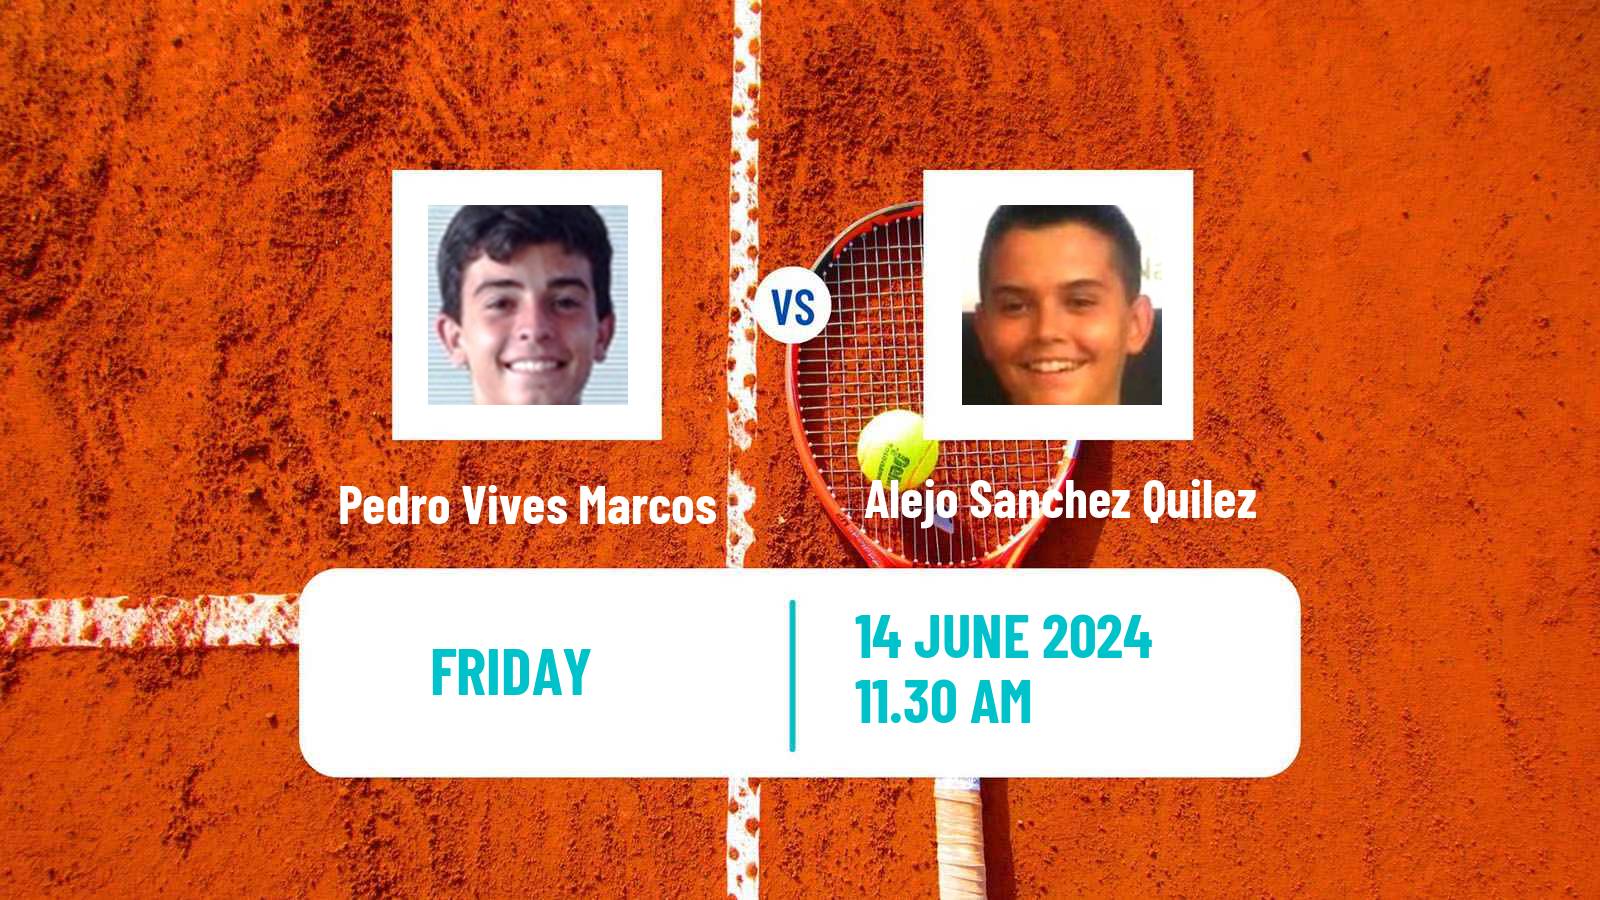 Tennis ITF M25 Martos Men Pedro Vives Marcos - Alejo Sanchez Quilez